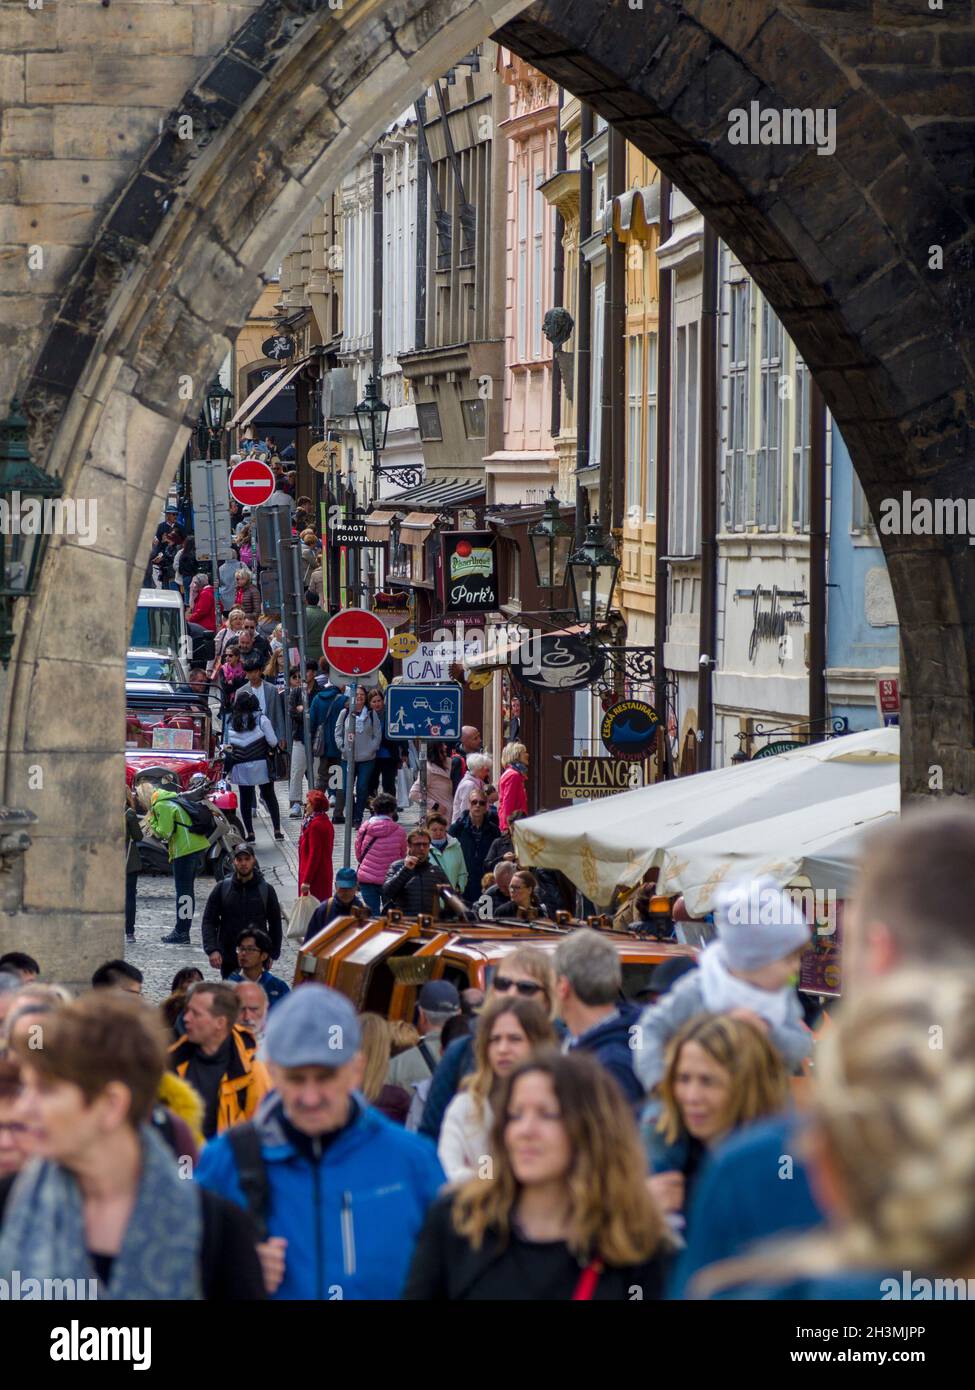 Calle comercial ocupada de Praga: La vista a través de la Torre de la Pólvora en Praga Muchos compradores y turistas se agolpan en la popular calle comercial. Foto de stock